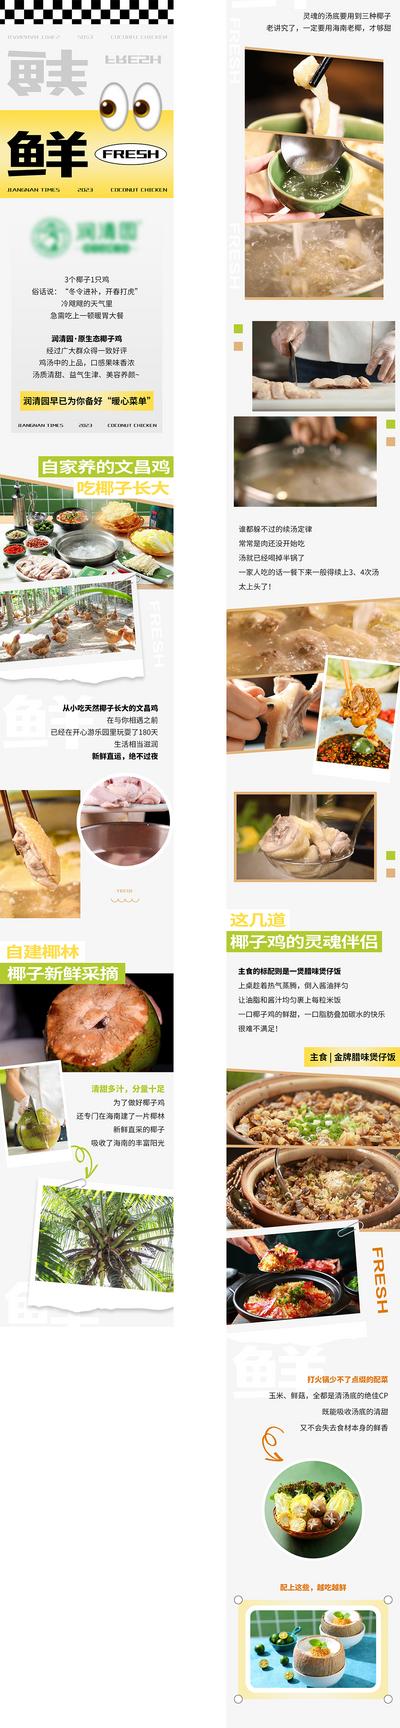 【南门网】广告 海报 餐饮 椰子鸡 美食 长图 推文 商场 购物 介绍